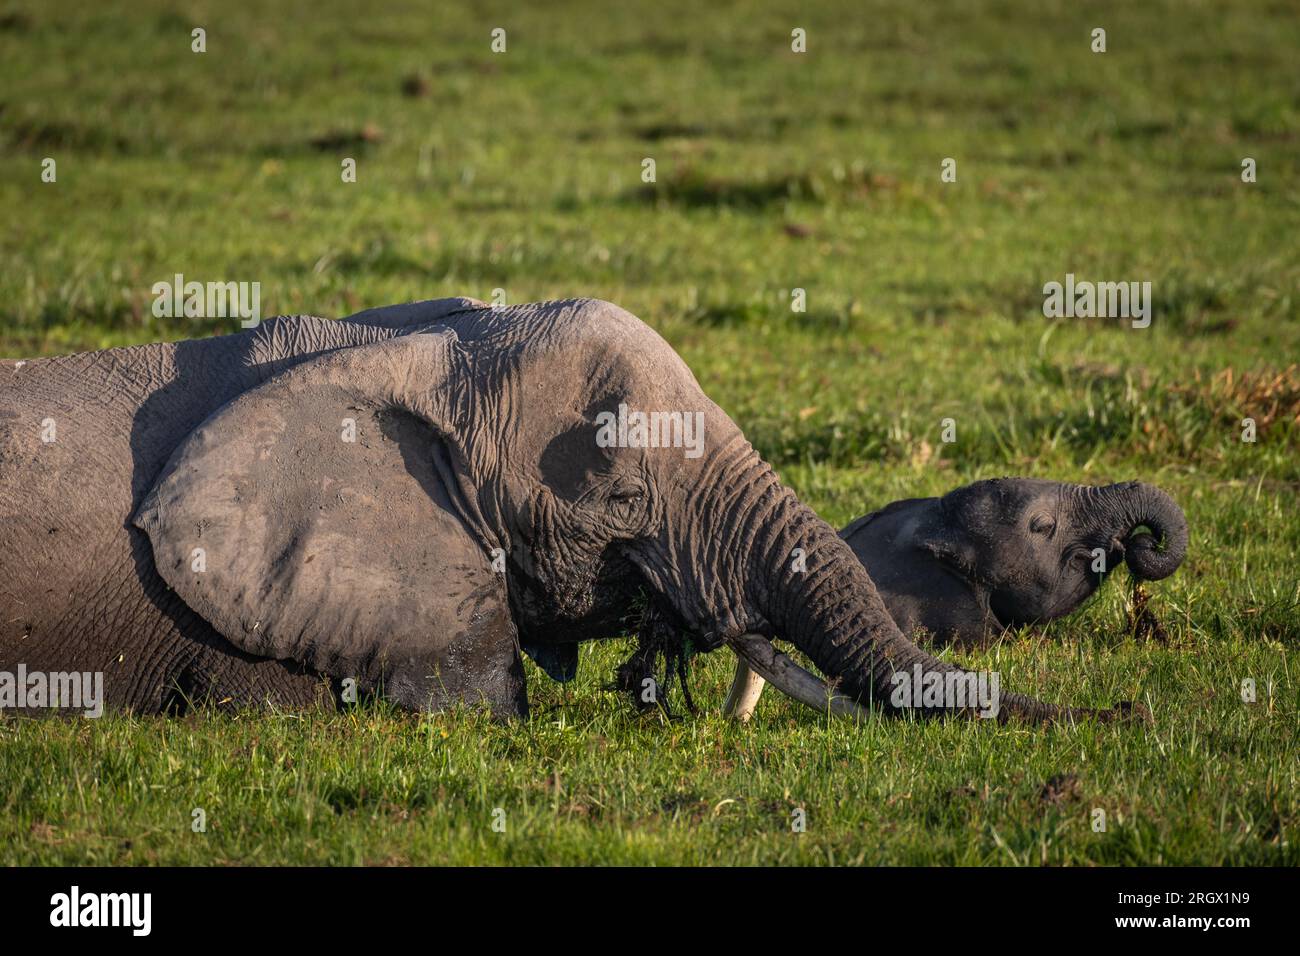 African elephant, Loxodonta africana,  Elephantidae, Amboseli National Park, Kenya, Africa Stock Photo